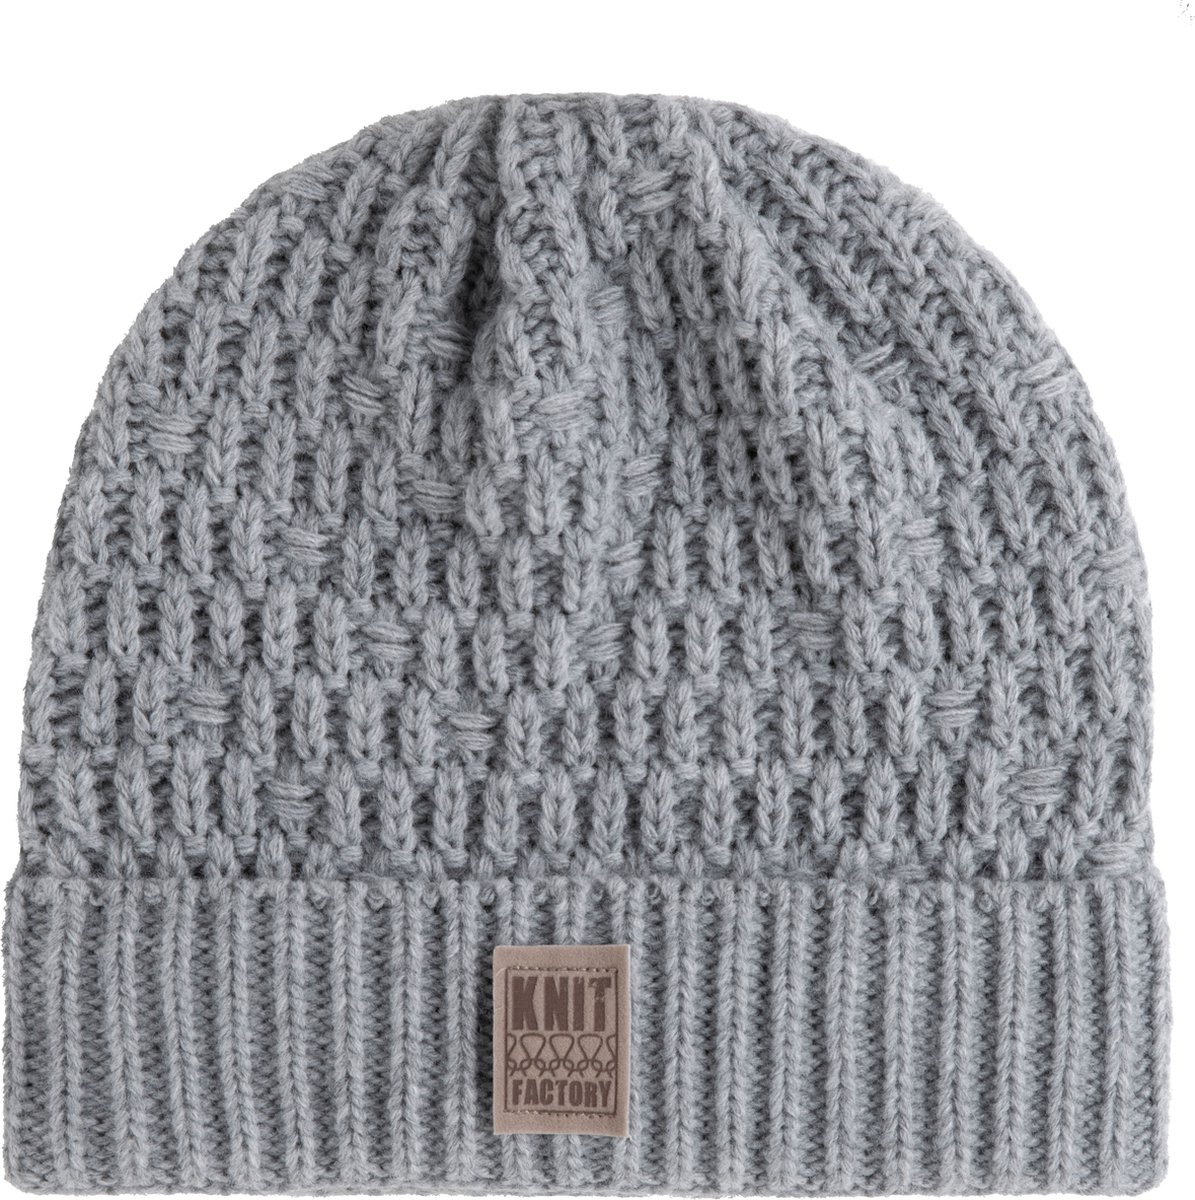 Knit Factory Jaida Gebreide Muts Heren & Dames - Beanie hat - Licht Grijs - Warme lichtgrijze Wintermuts - Unisex - One Size